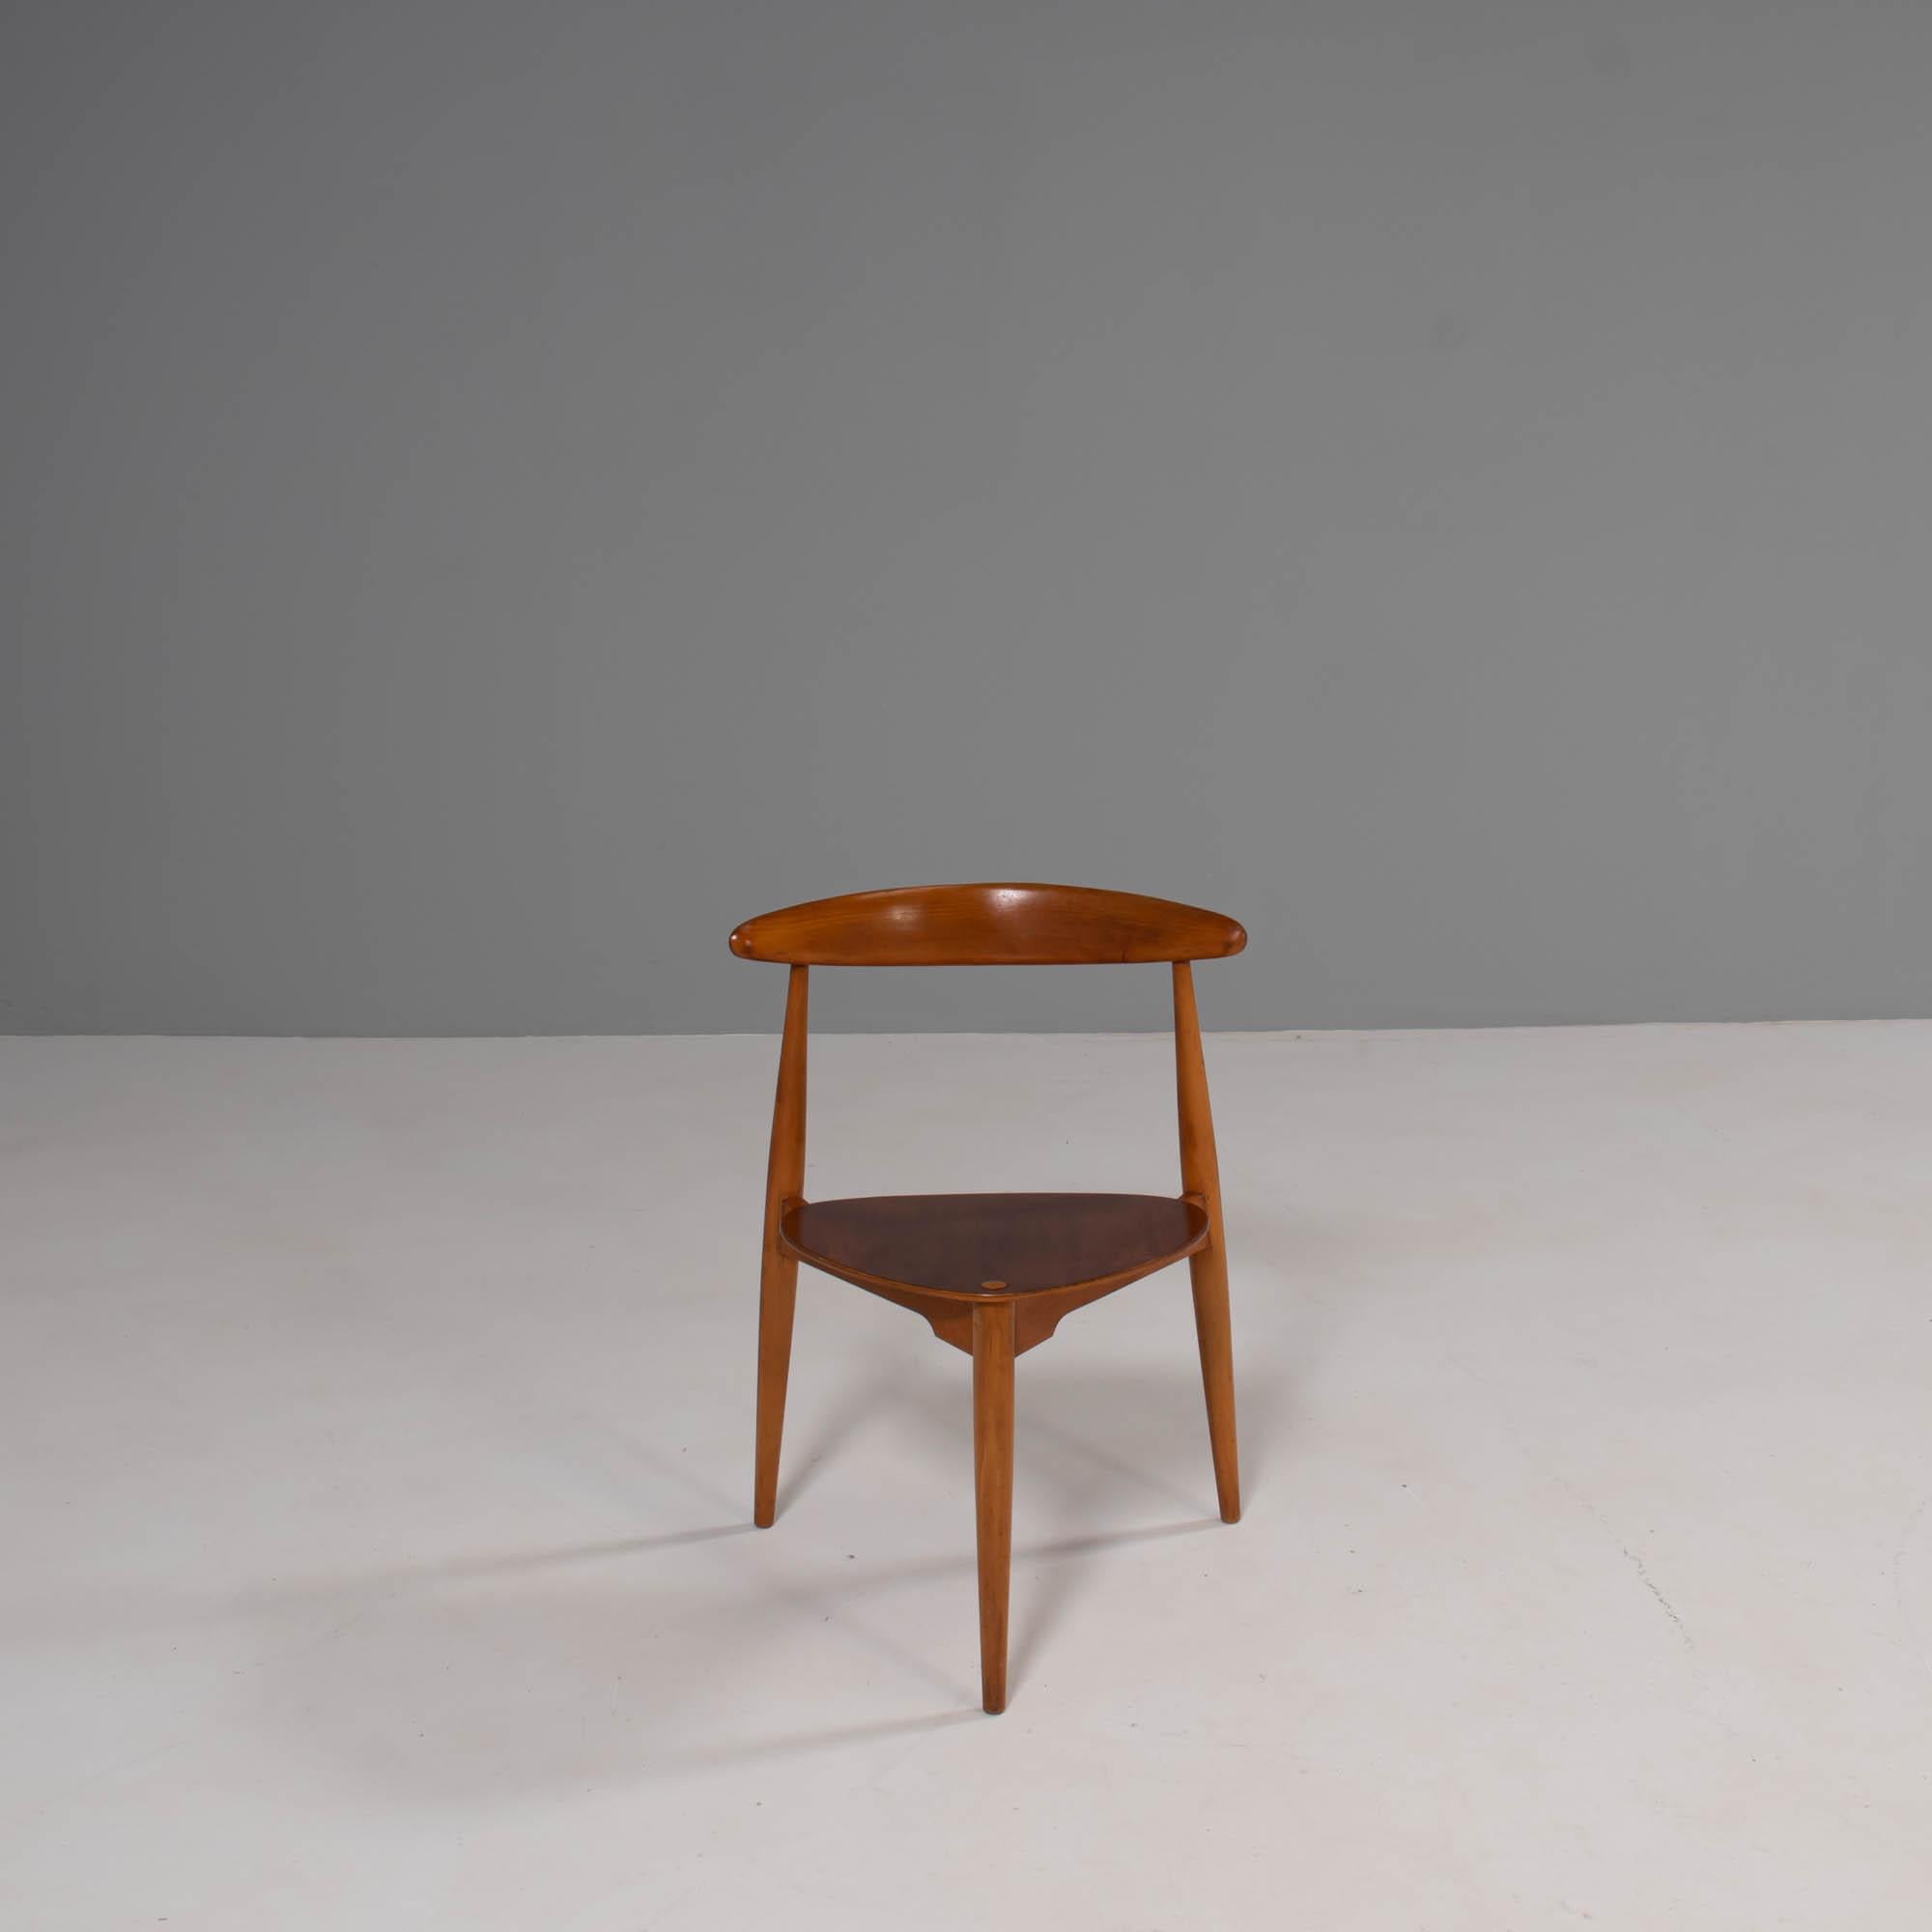 Conçu à l'origine par Hans Wegner dans les années 1950, le FH4103 a été fabriqué par Fritz Hansen et vendu à Londres par Story's of Kensington.

Fabriquées en hêtre et en teck, les chaises FH4103 sont également connues sous le nom de chaises 